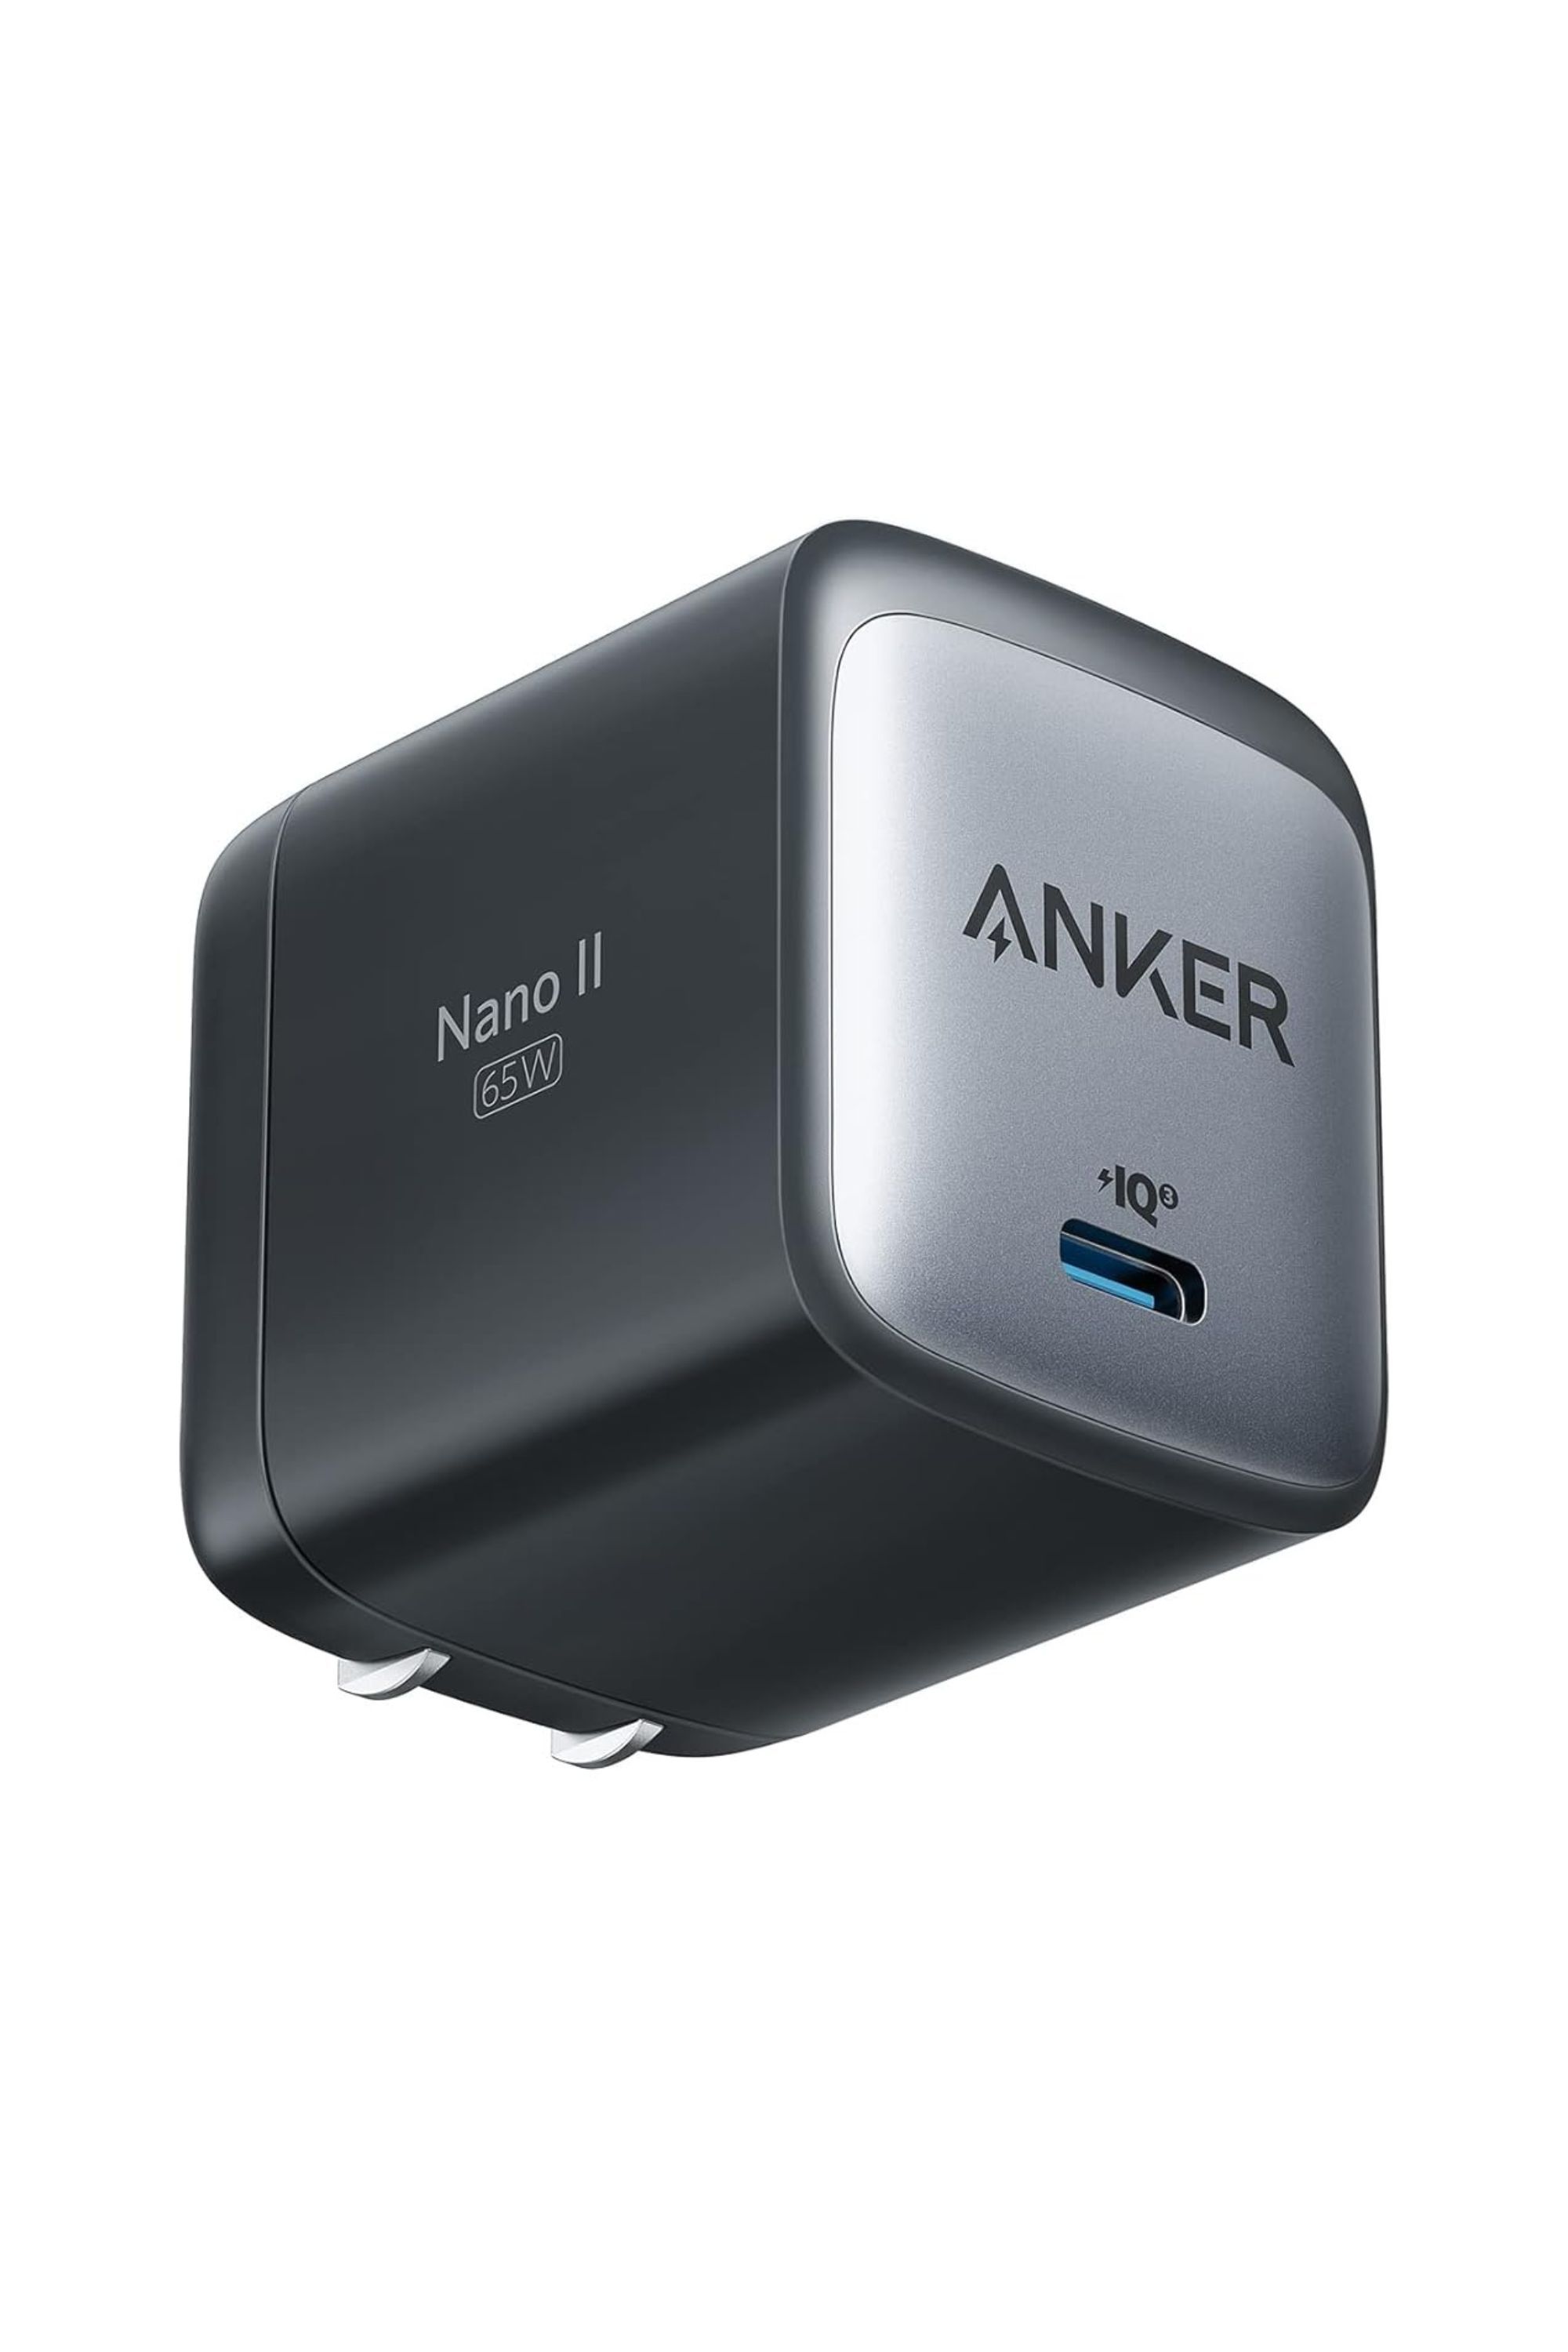 Anker 715 Nano II 65W USB Charger